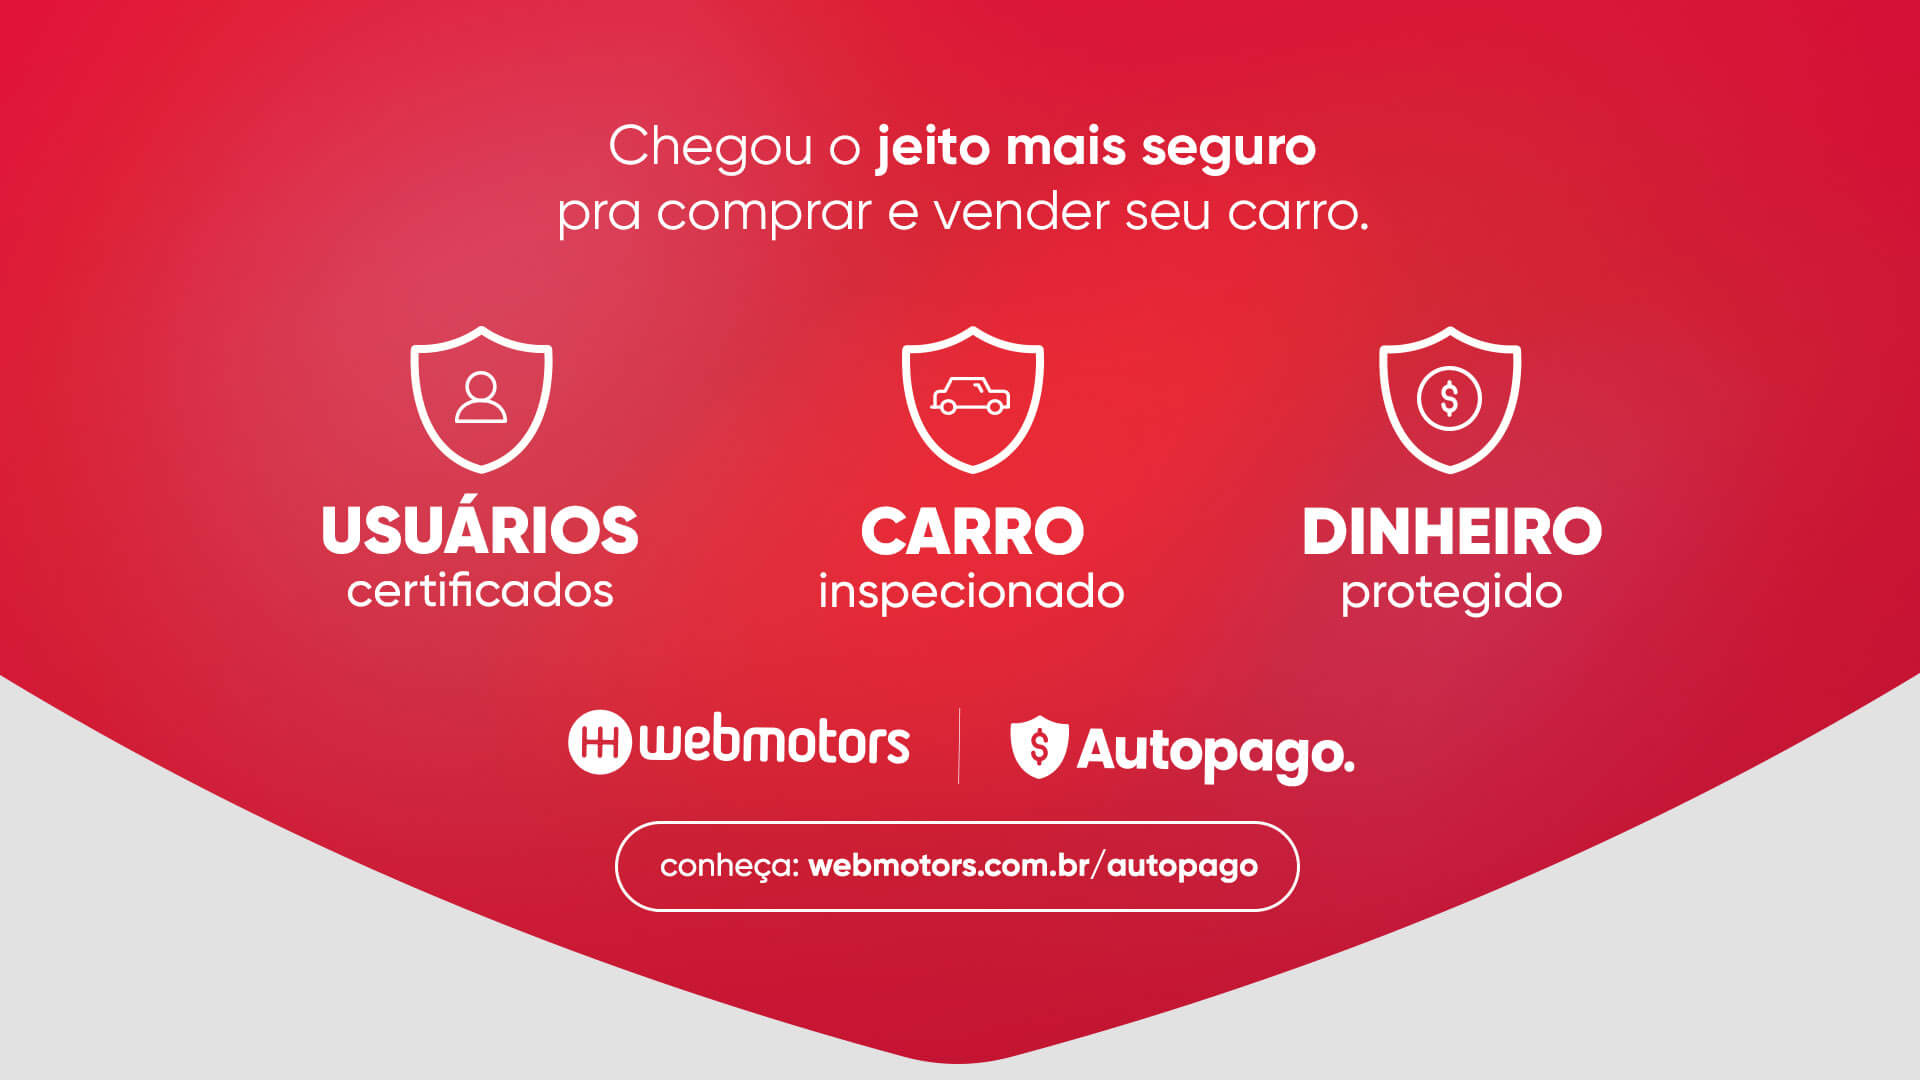  Autopago: maneira 100% segura de comprar ou vender um carro na internet.